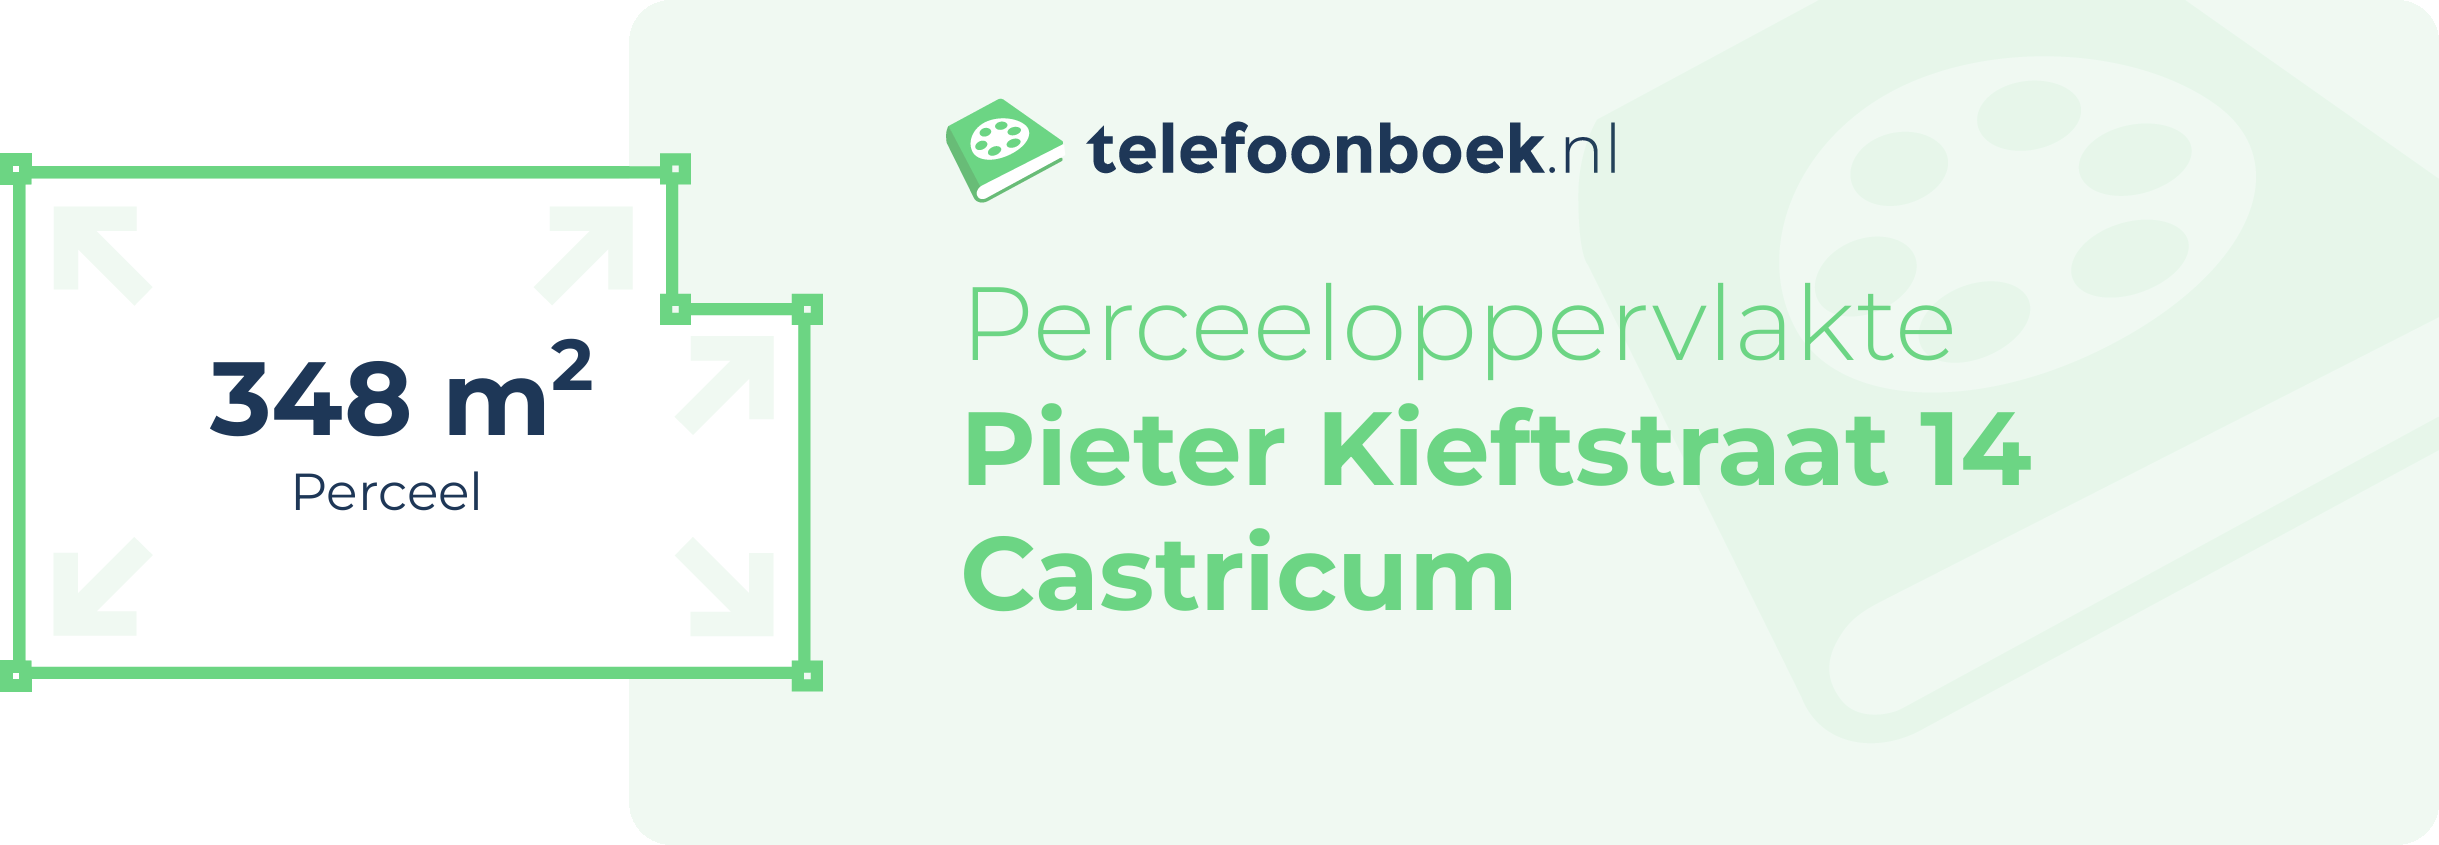 Perceeloppervlakte Pieter Kieftstraat 14 Castricum